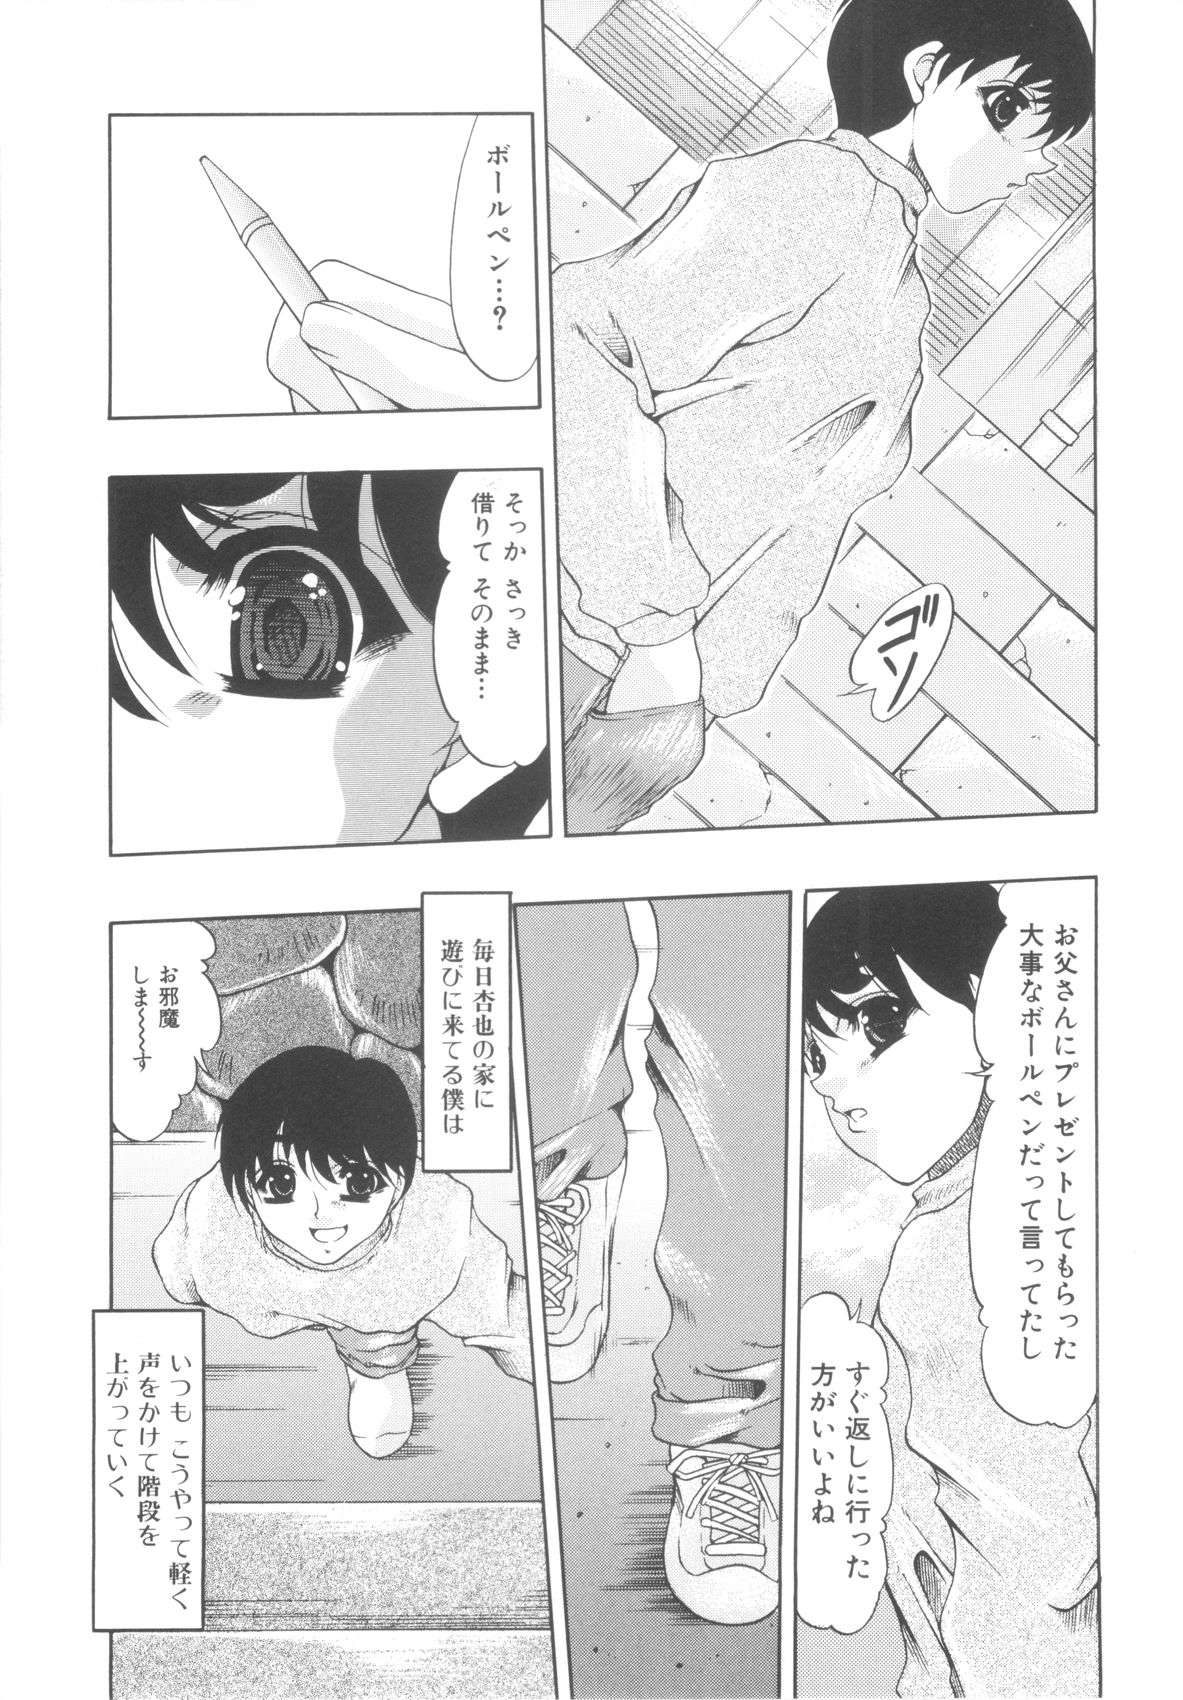 [Anthology] Sho-Taro & One-Sha Volume 01 page 29 full